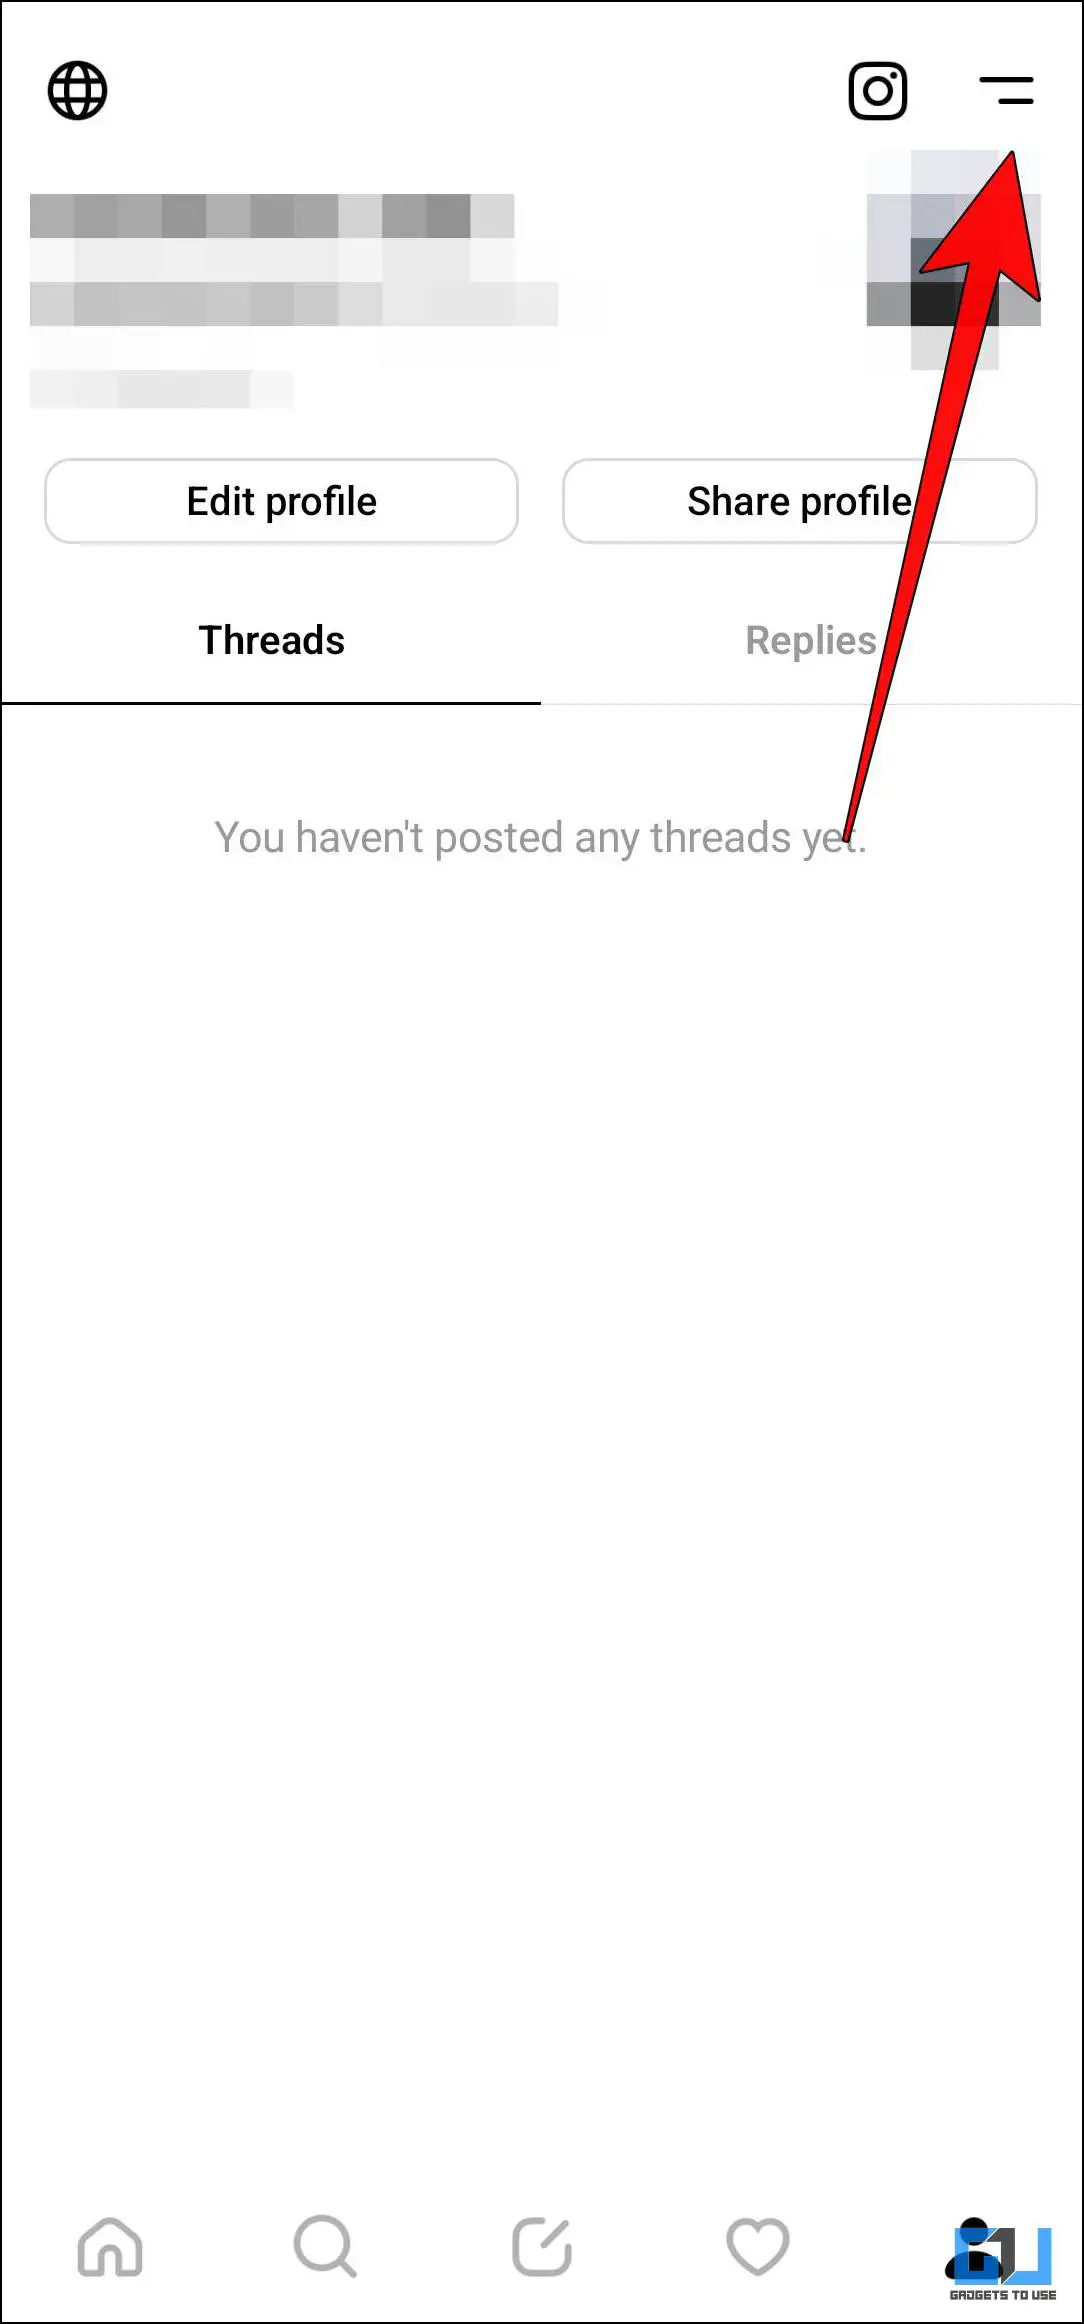 نام کاربری برنامه Threads را تغییر دهید